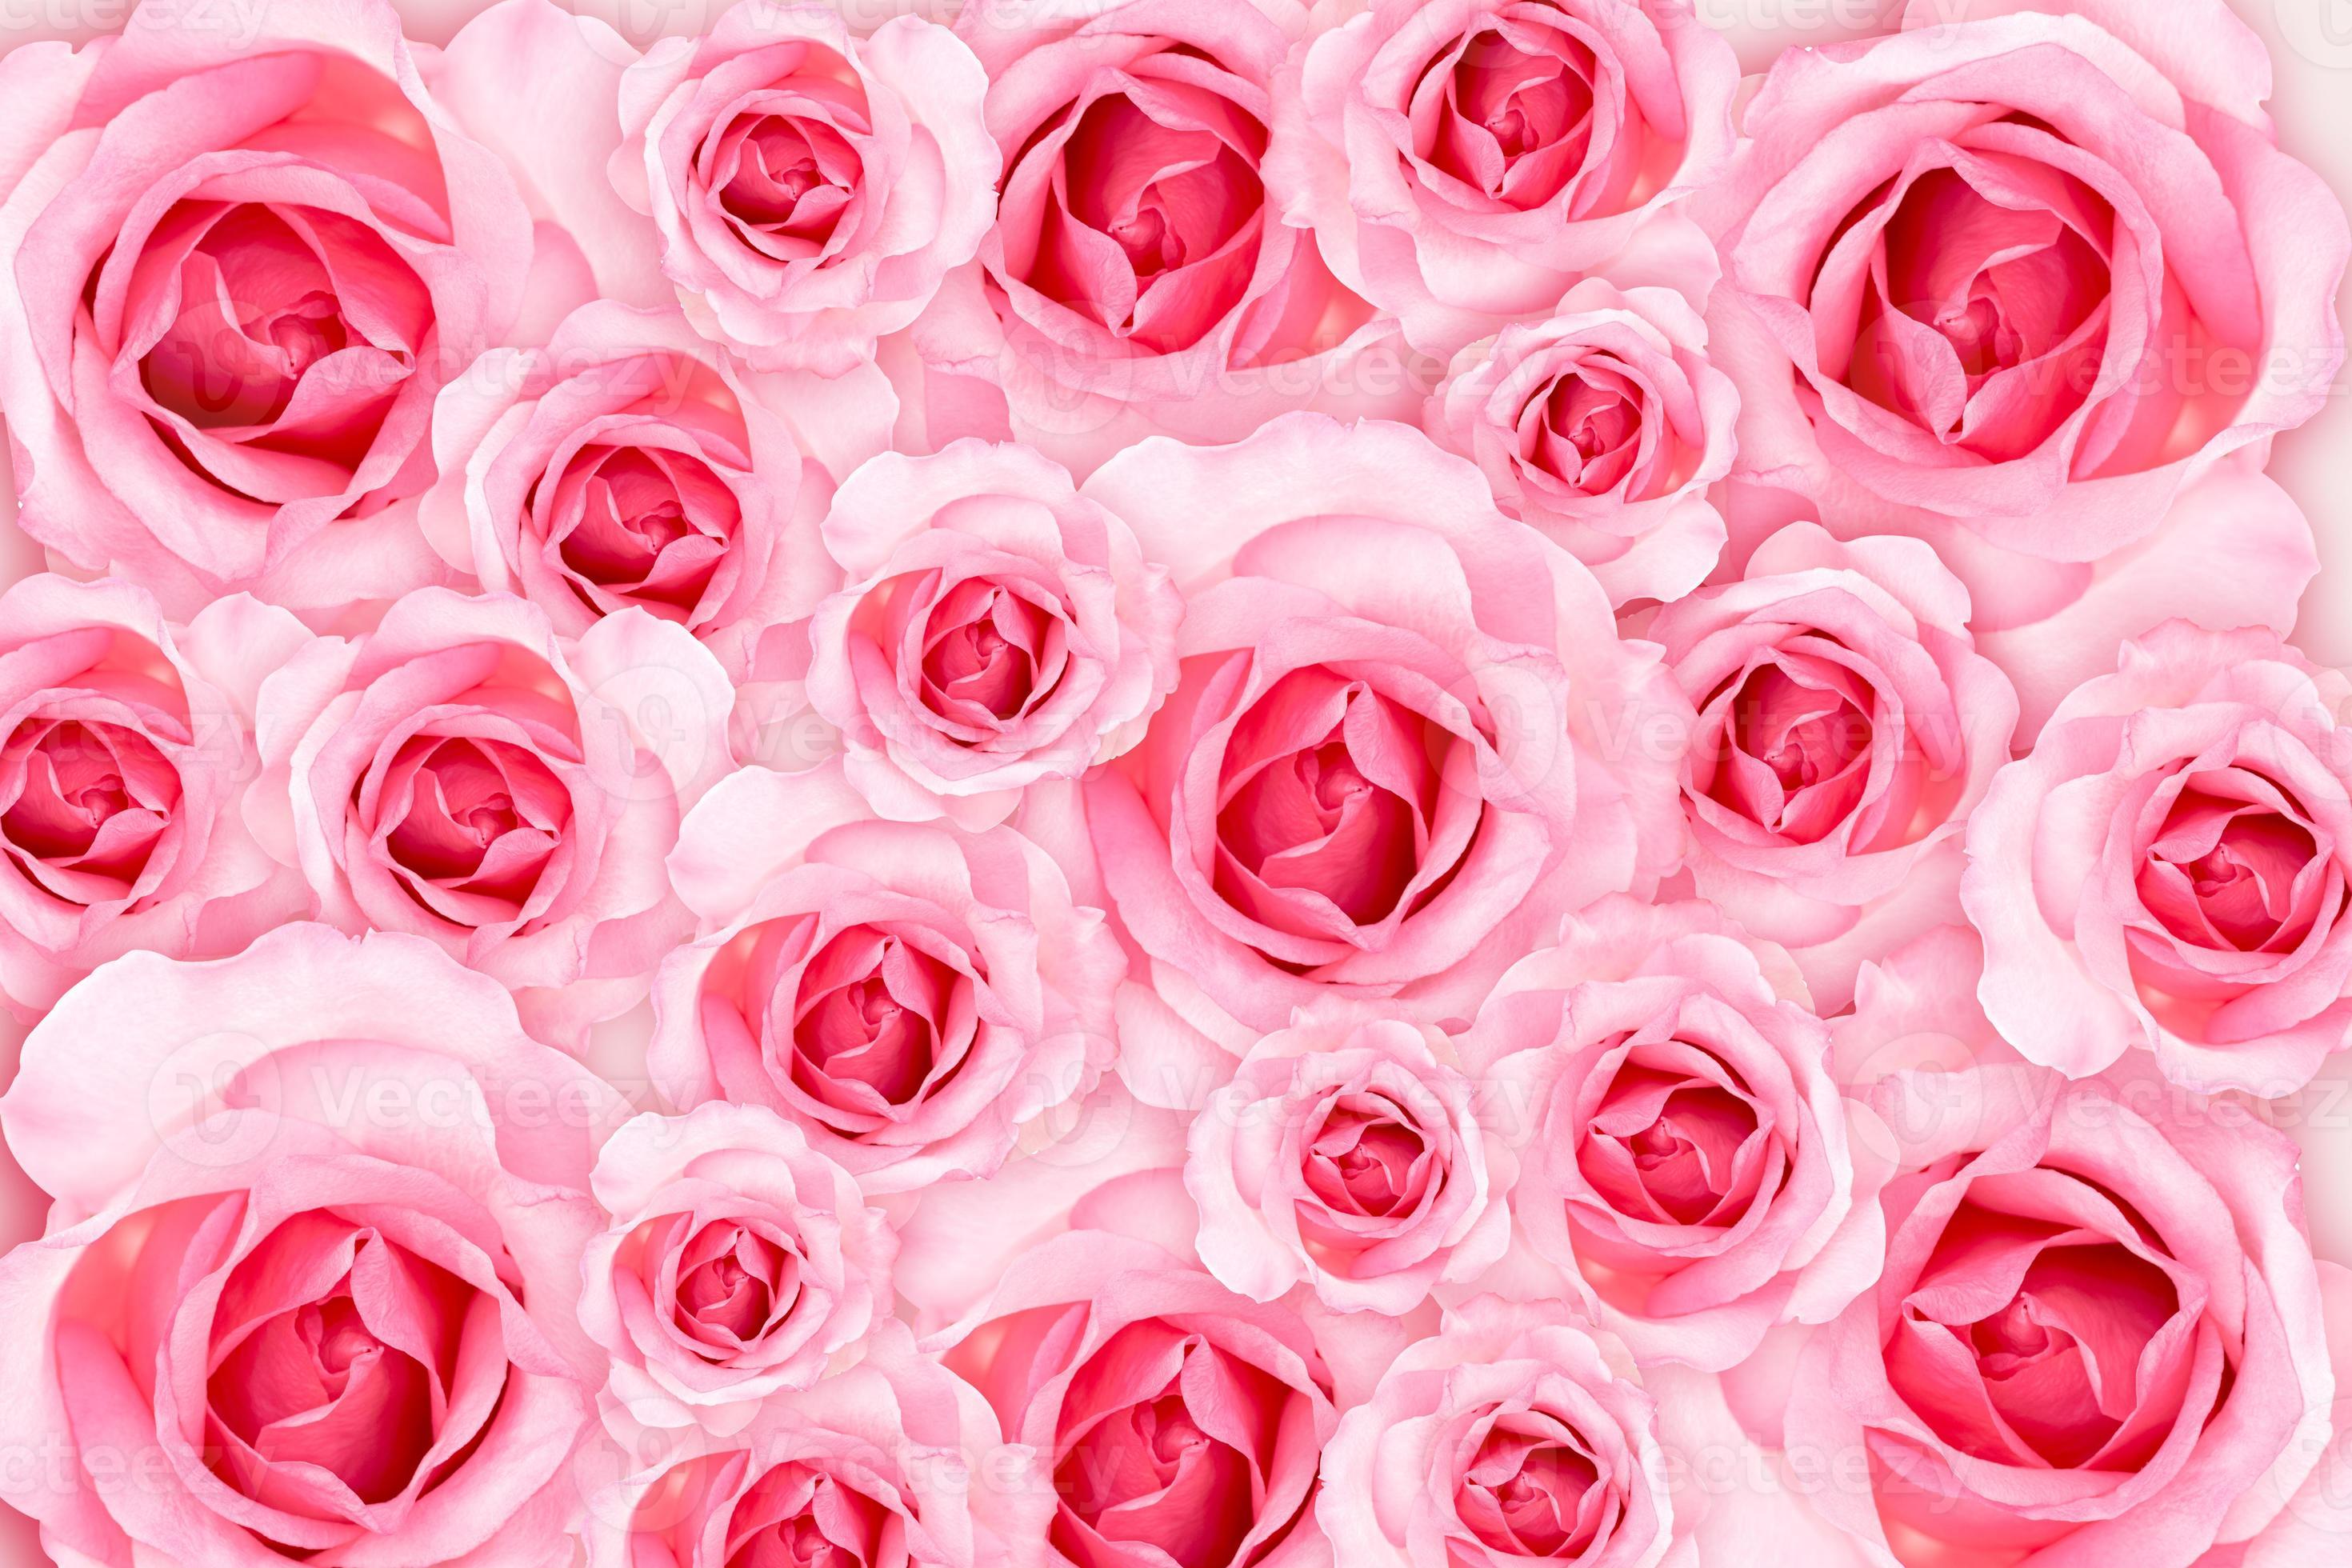 Hình nền hoa hồng hồng tươi mới sẽ mang lại một bầu không khí cực kỳ tươi mới cho điện thoại của bạn. Sắc hồng tươi tắn và tươi mới này sẽ giữ tinh thần của bạn luôn sáng sủa và cho bạn một cảm giác yên bình. Không bao giờ làm phiền bạn prấn xem hình nền trang trí thiết bị của bạn với những bông hoa hồng hồng xinh đẹp này.